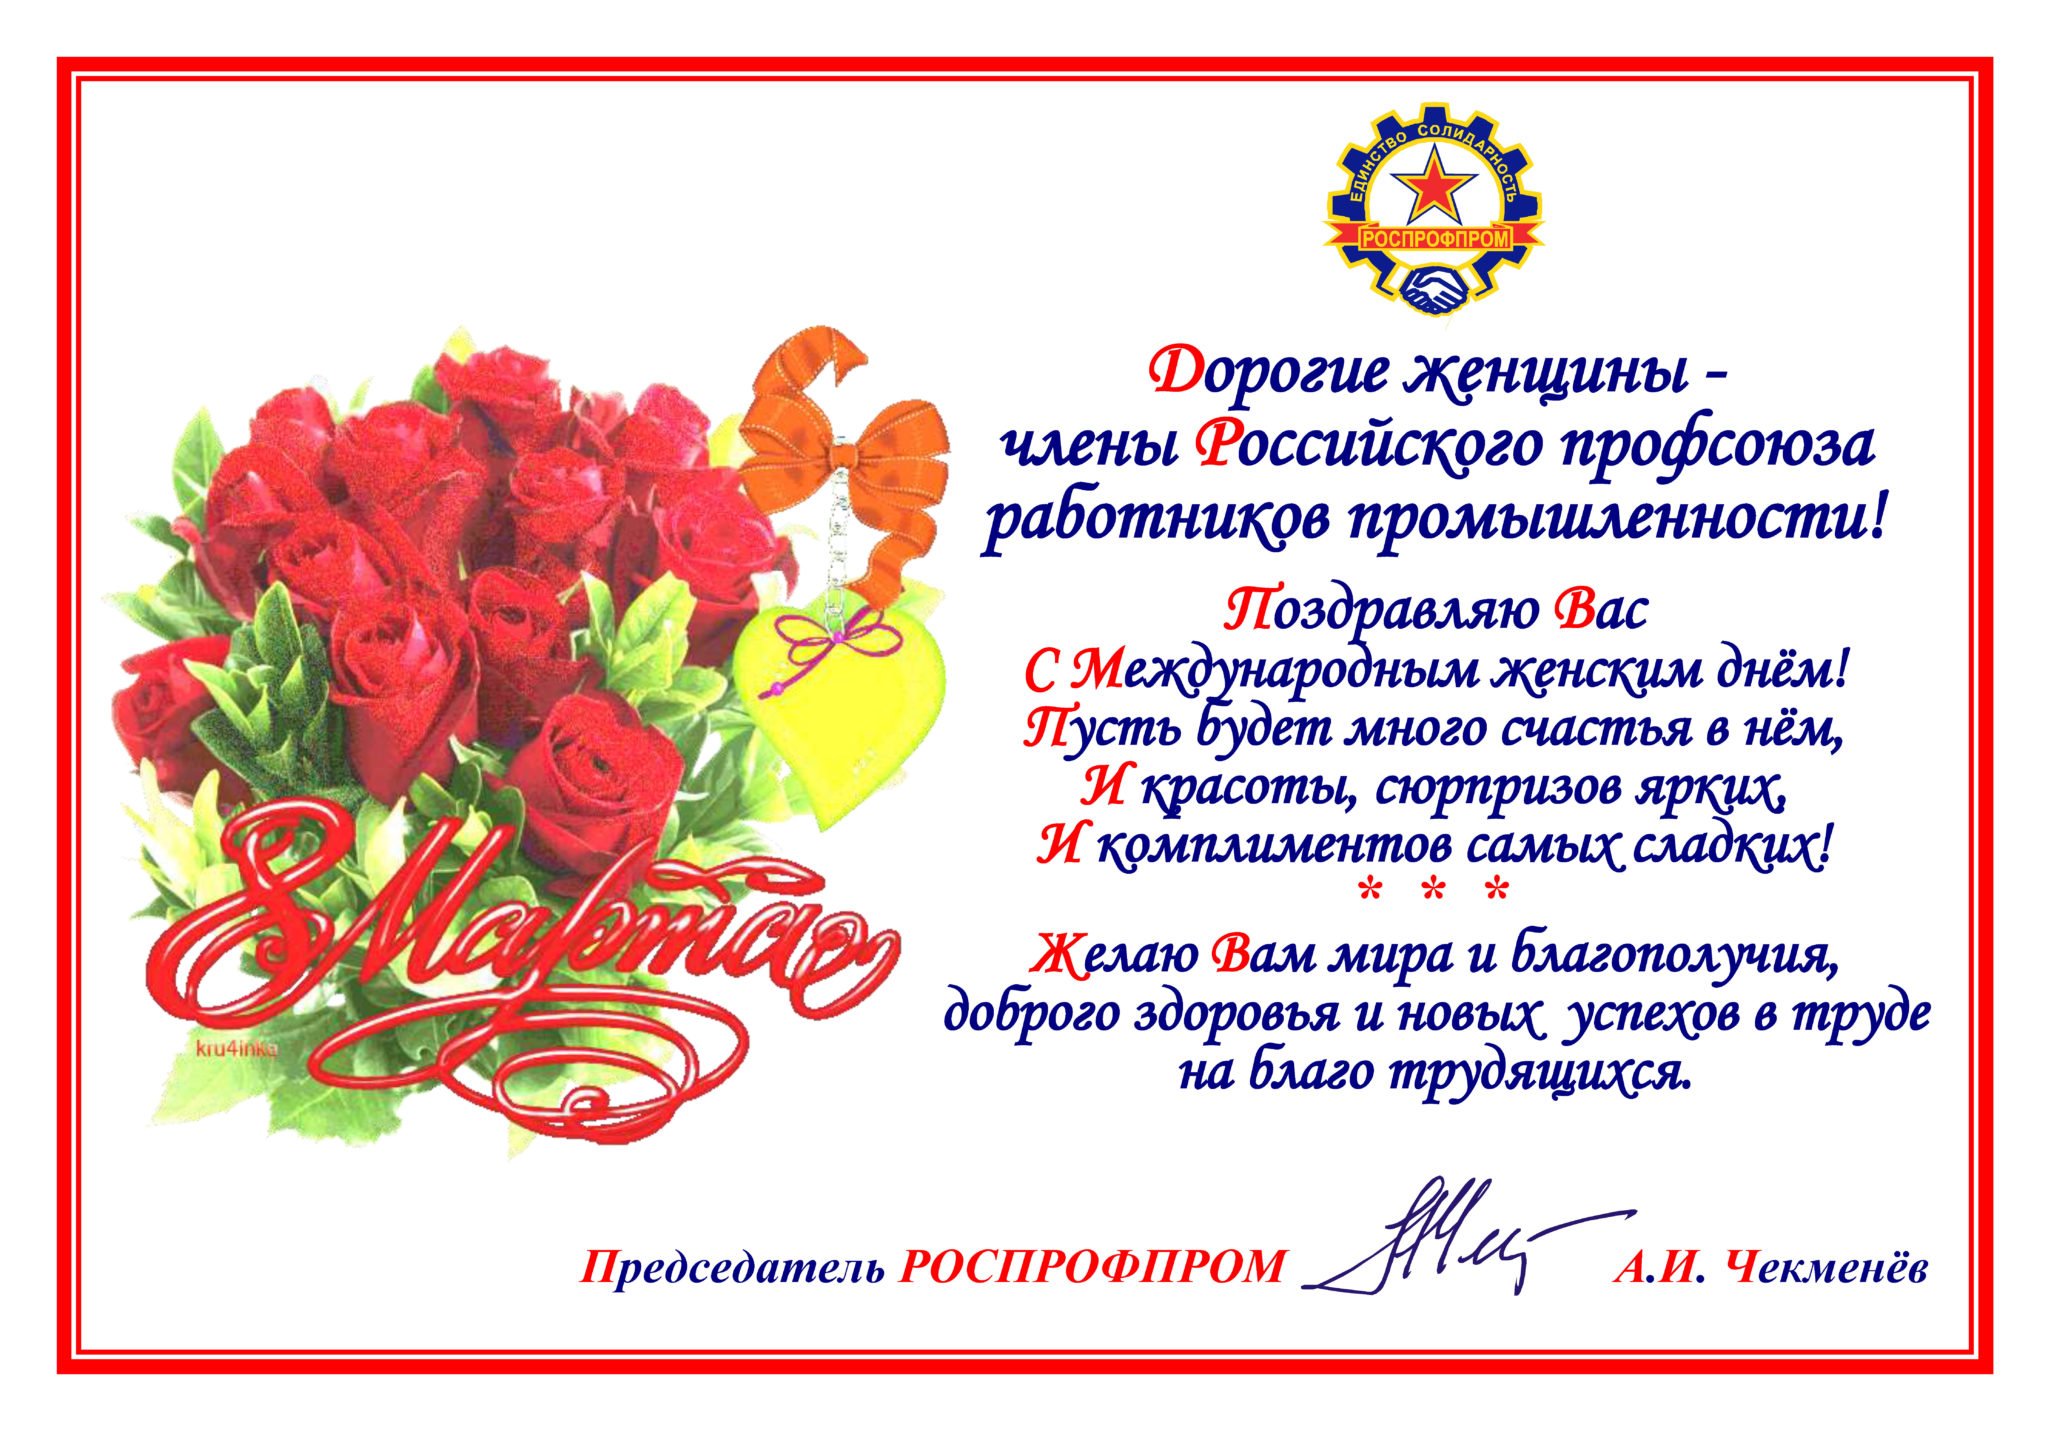 Поздравление женщинам россии. Поздравление от профсоюза.